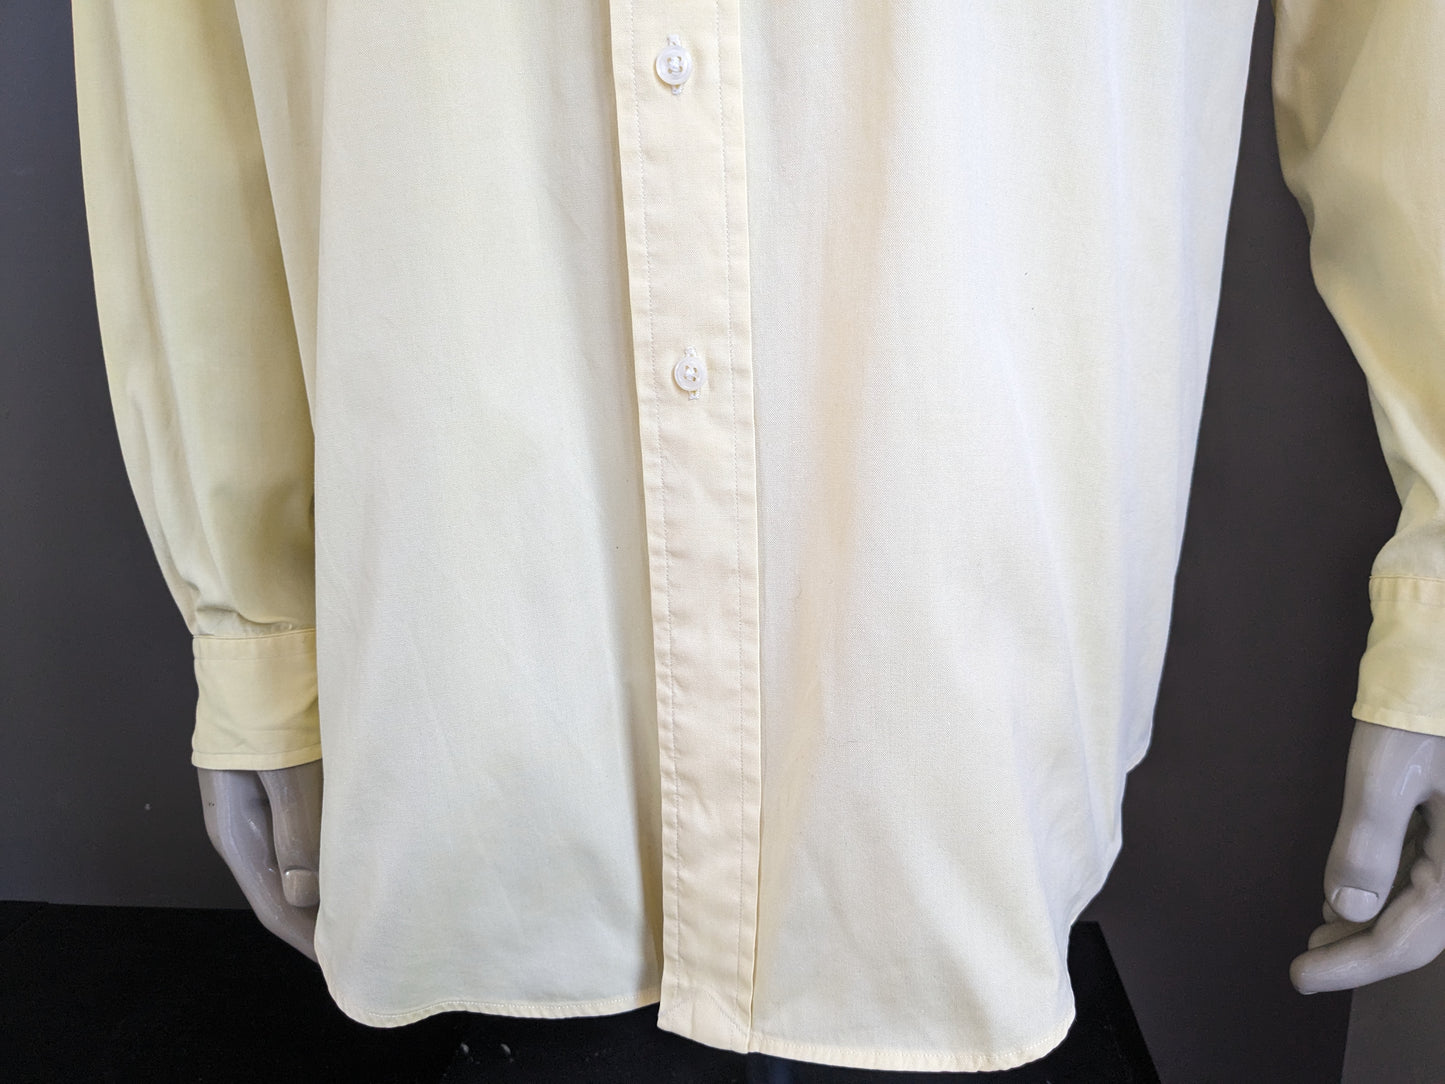 Polo von Ralph Lauren Shirt. Gelb. Yarmouth Typ. Größe 2xl / xxl.